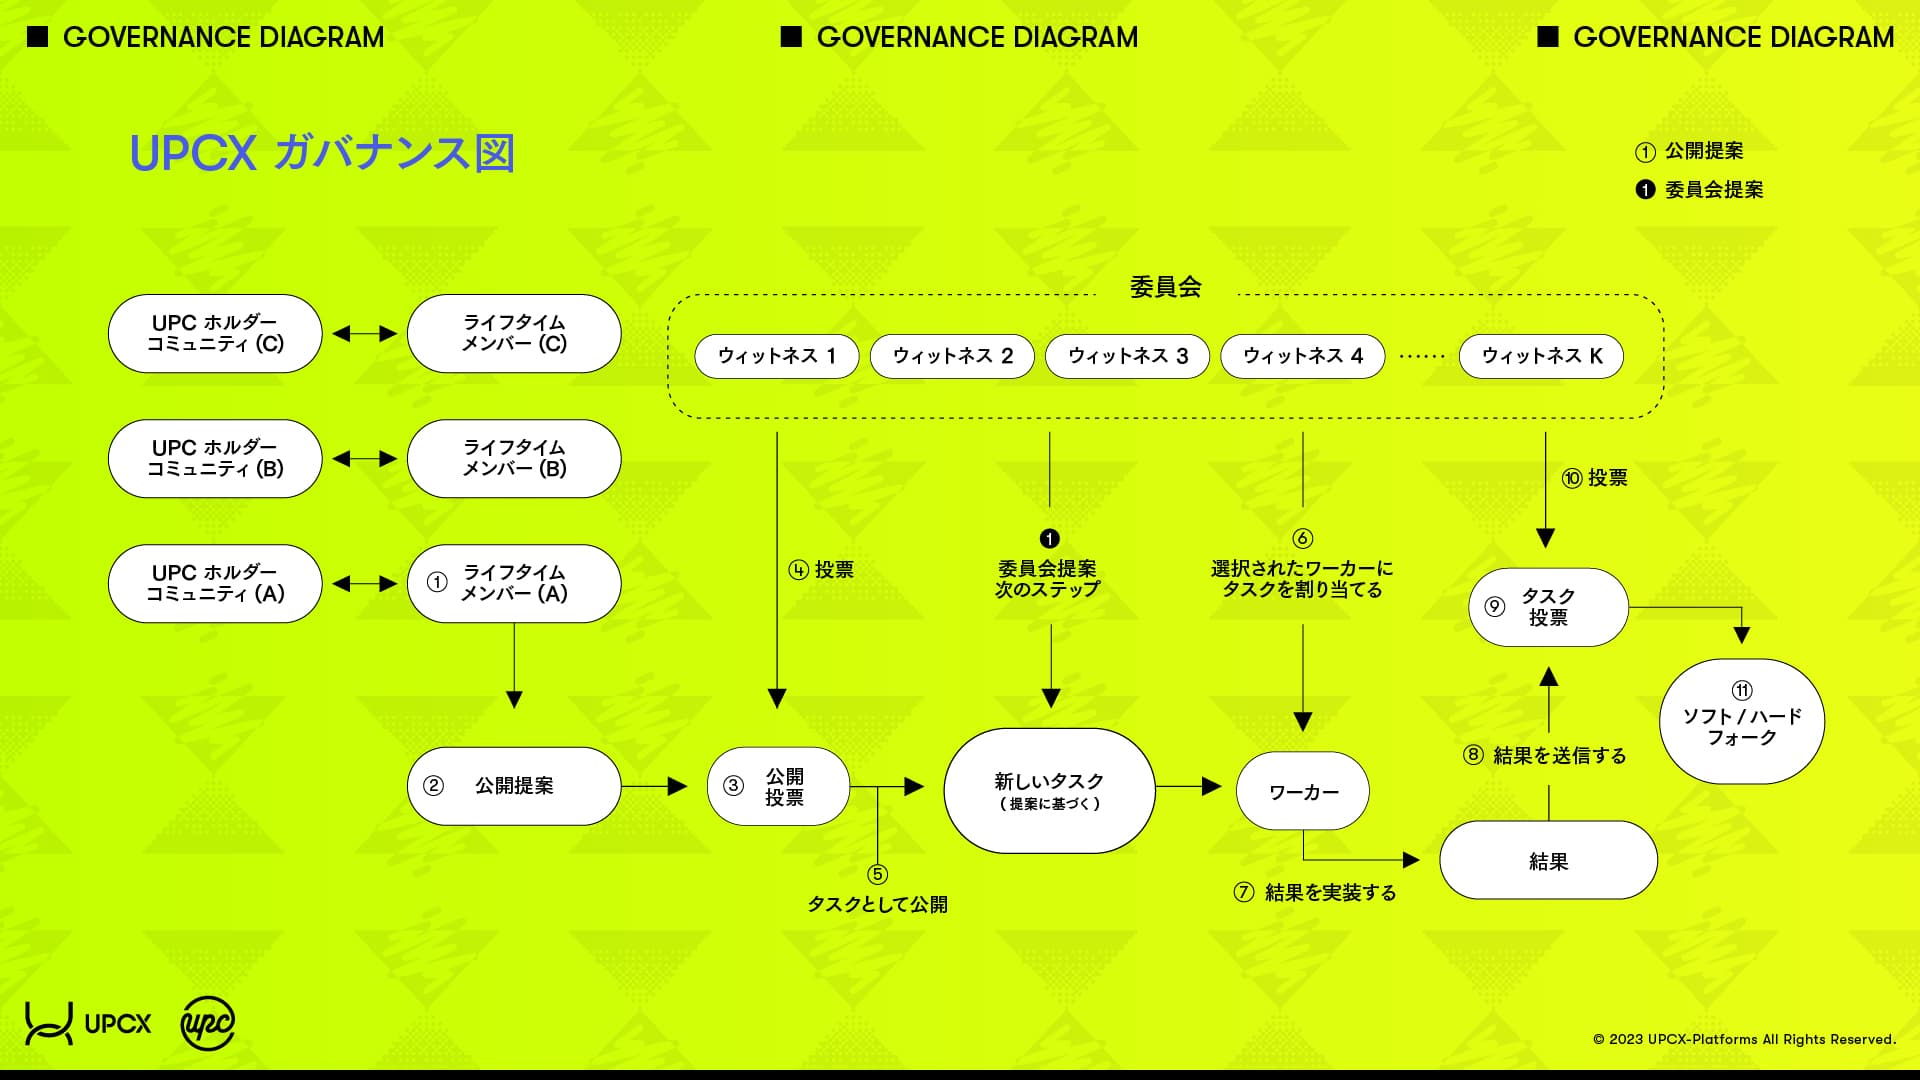 UPCX Governance Diagram